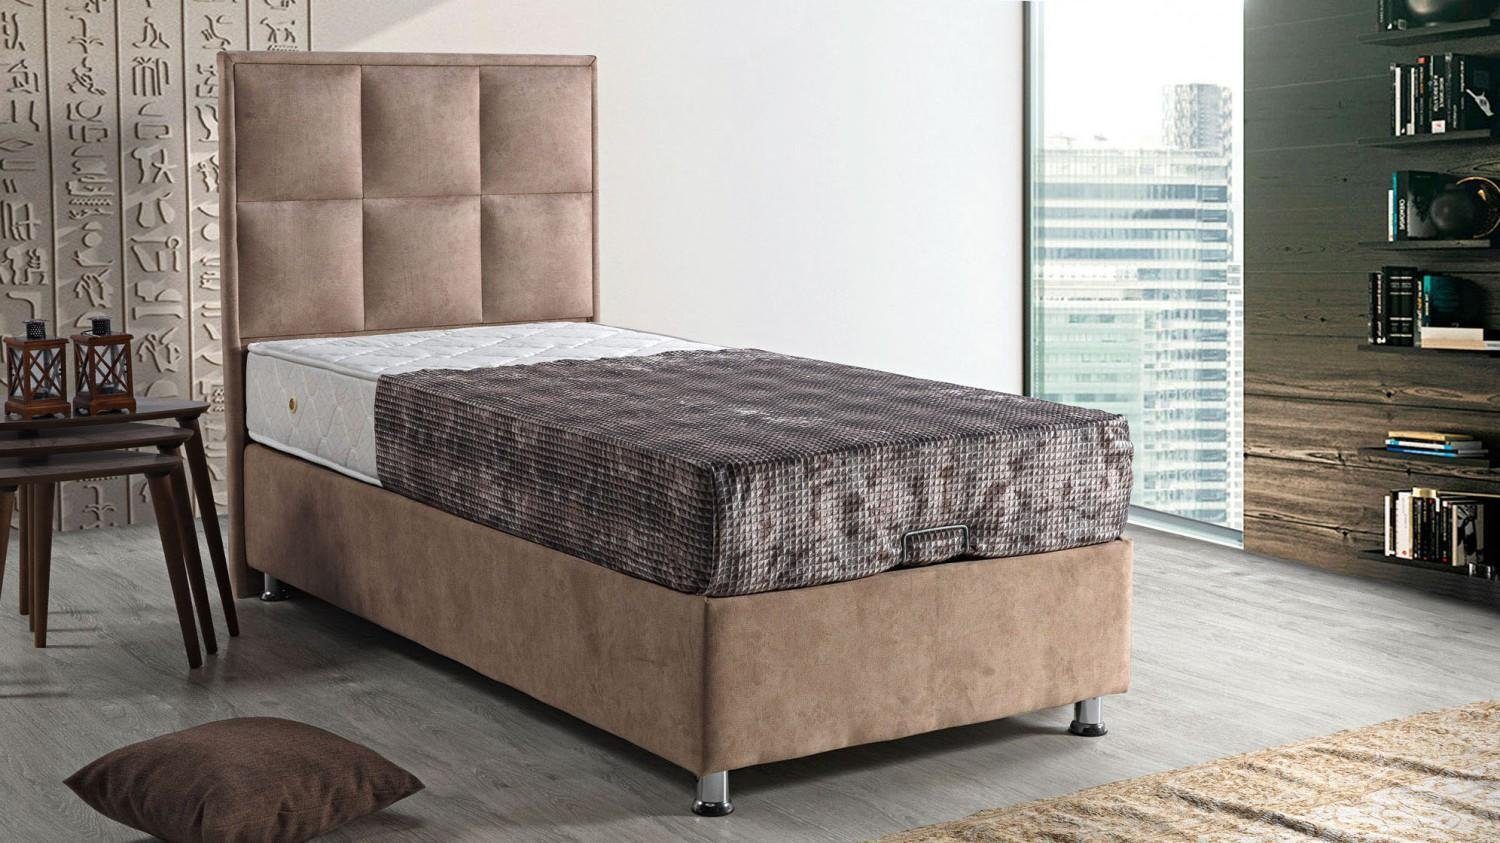 Bett 90x190 Möbel (Bett), Modern JVmoebel Made Schlafzimmer Polster Bett Betten Design Europe Luxus In